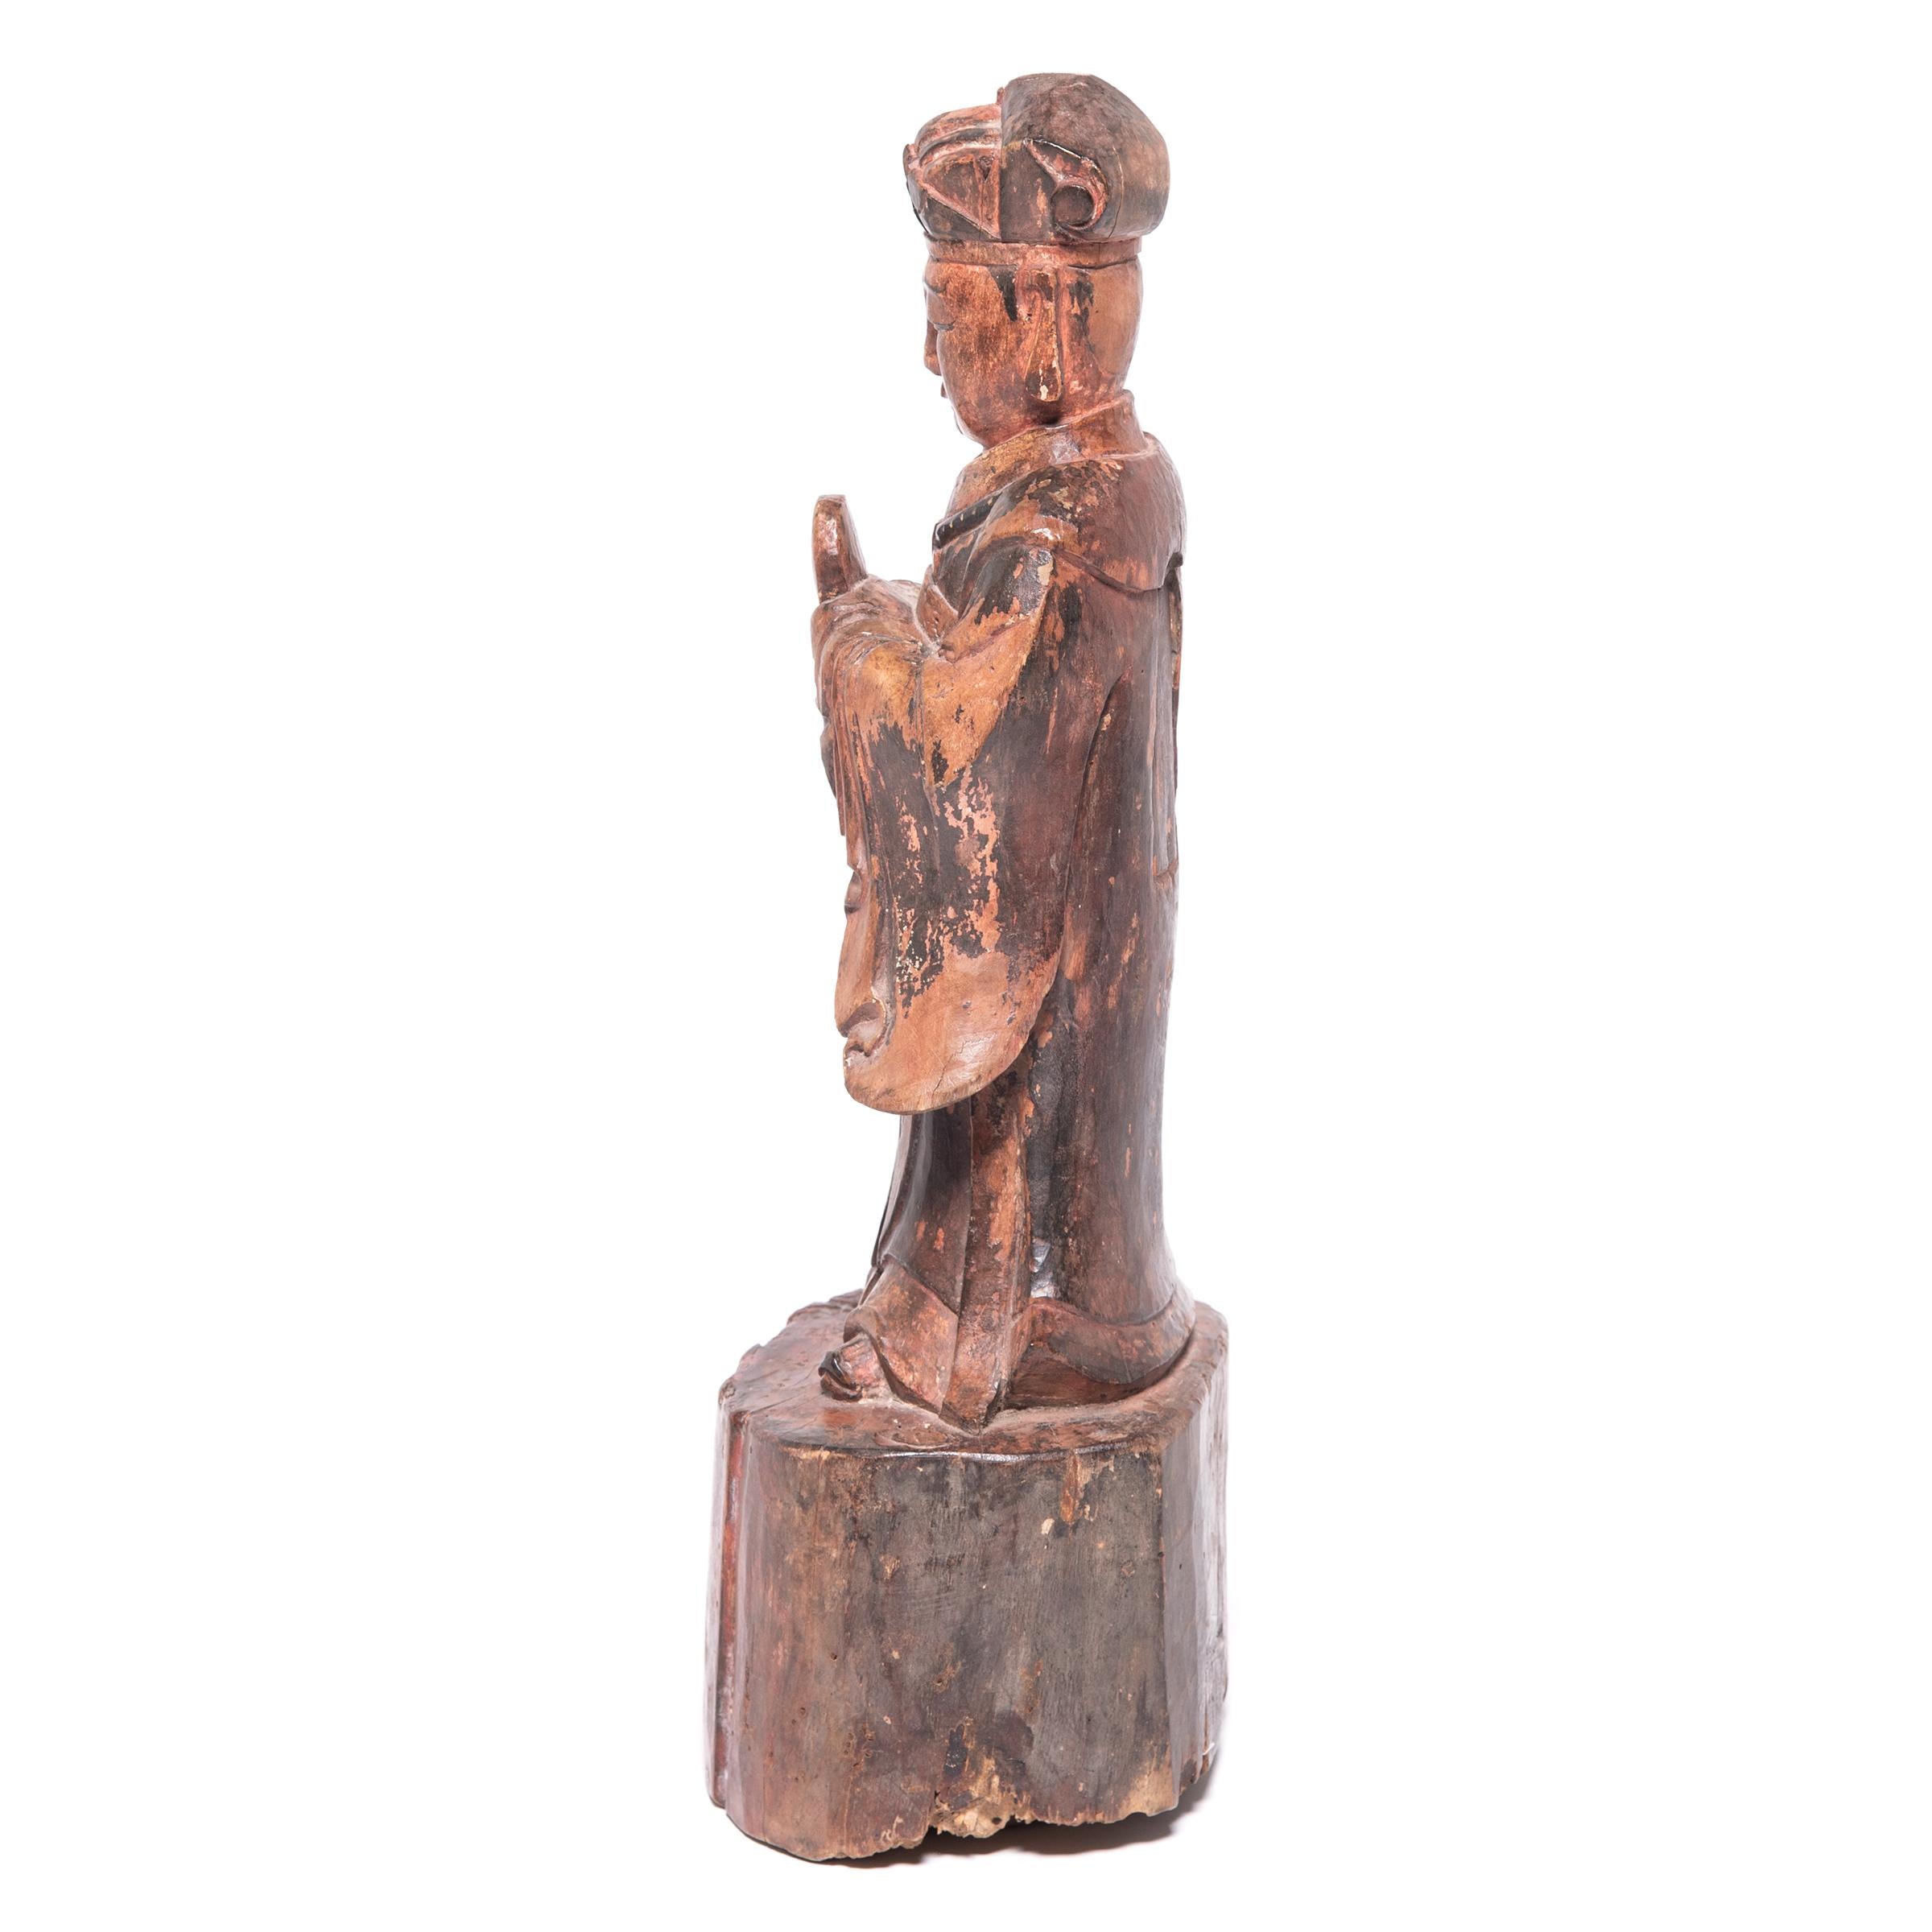 Diese aus Holz geschnitzte Geisterfigur aus dem 19. Jahrhundert ist eine Hommage an die Vorfahren auf einem traditionellen Altartisch. Der Künstler ließ den Sockel den natürlichen Zustand des Holzes widerspiegeln und schnitzte die Figur mit